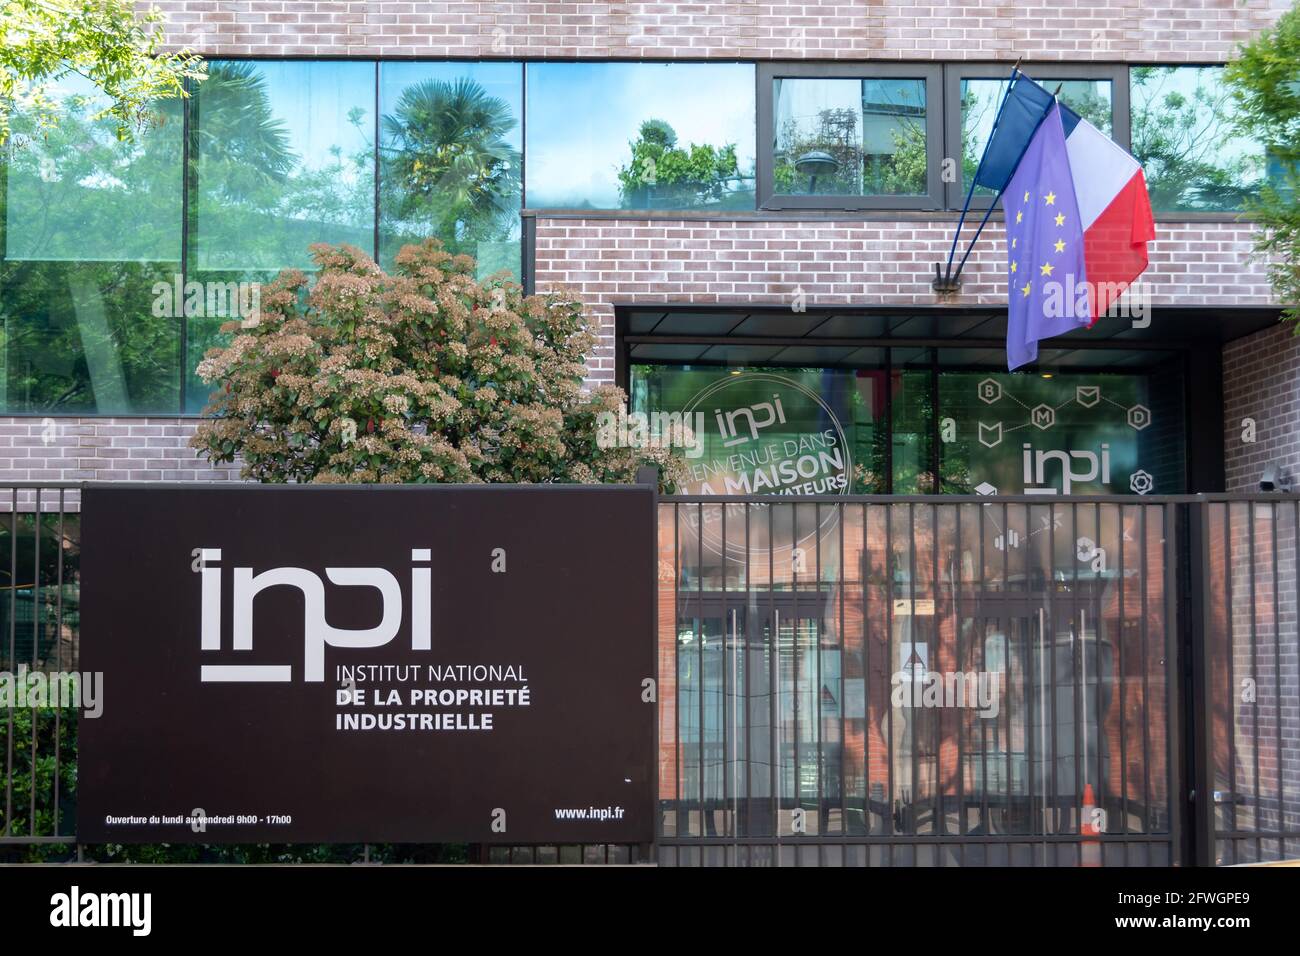 Vista exterior de la sede del INPI, Instituto Nacional de la Propiedad Industrial, institución pública francesa encargada de las marcas y patentes Foto de stock